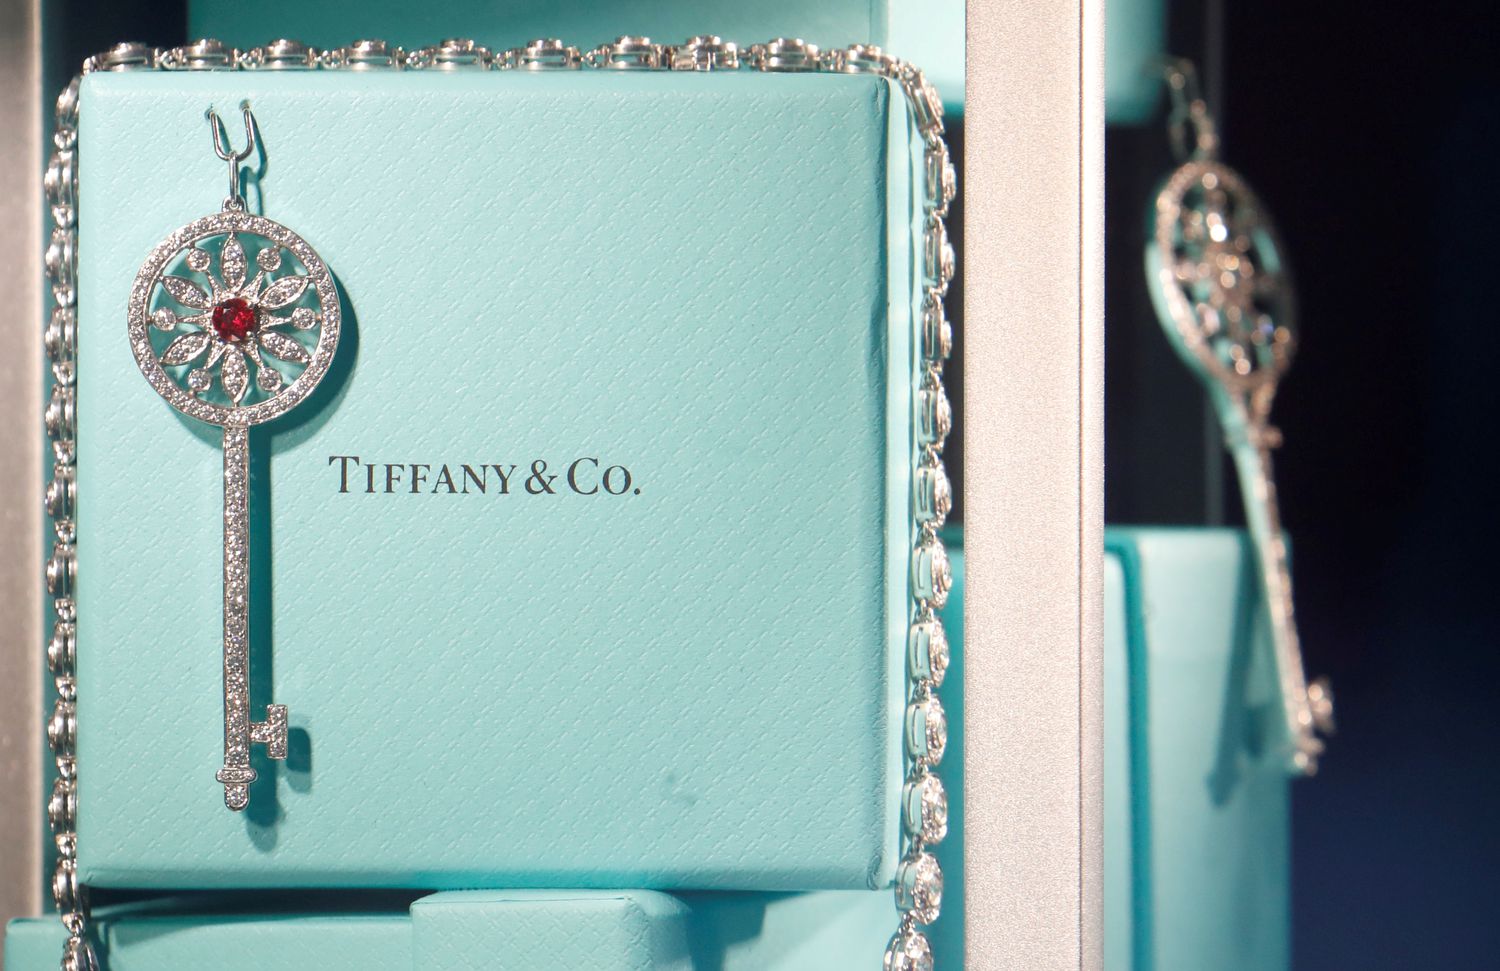 El grupo de Louis Vuitton cancela la compra de Tiffany